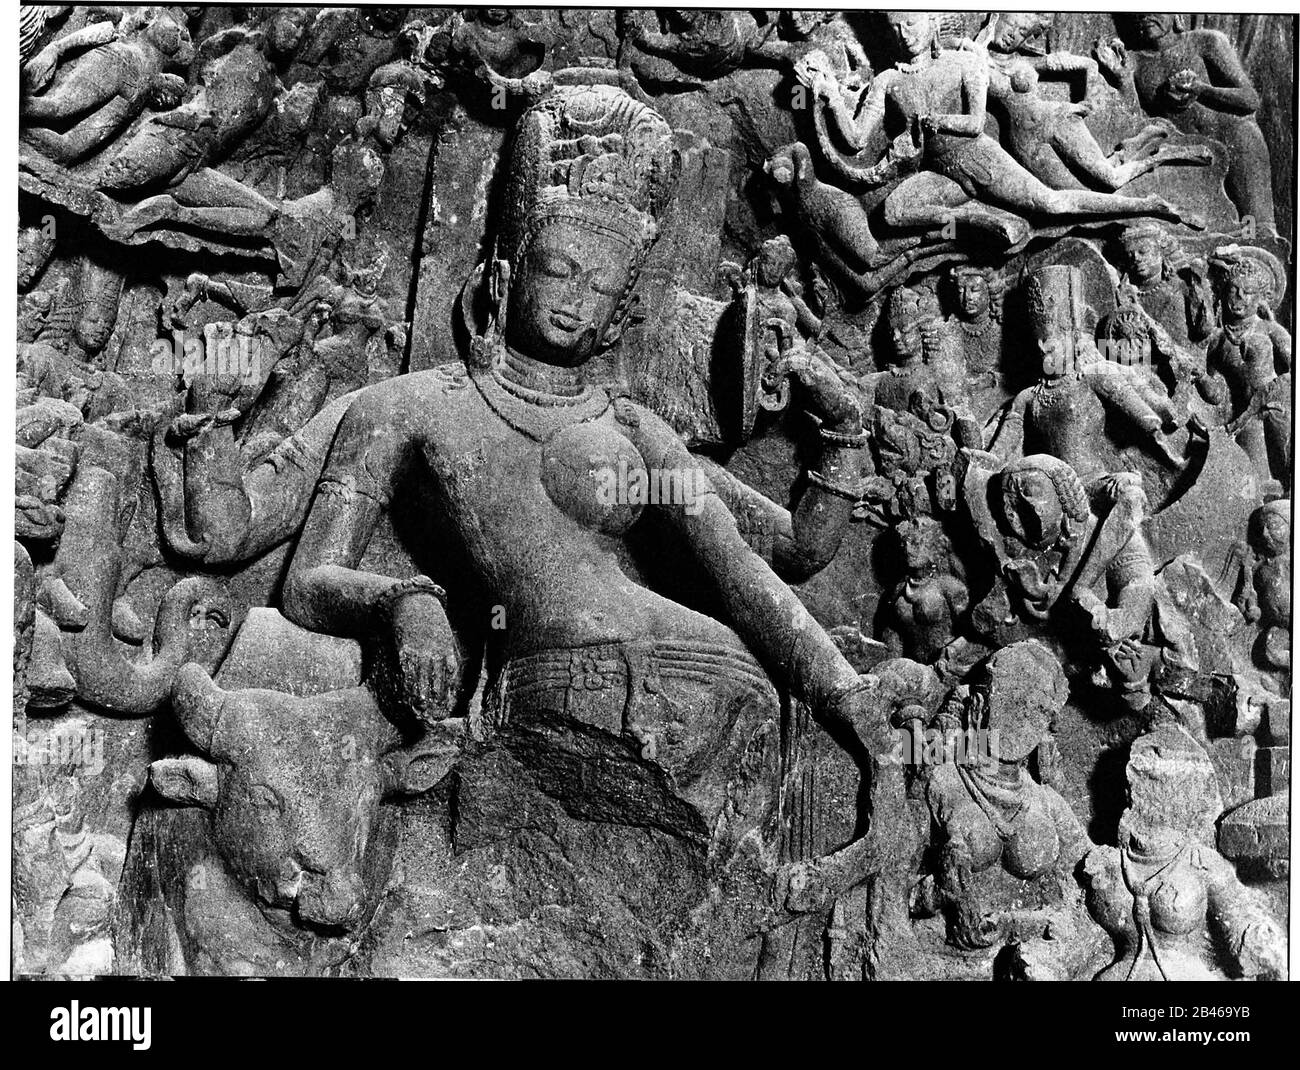 Shiva et Parvati, Ardhanarishvara, grotte Elephanta, site du patrimoine mondial de l'UNESCO, île Elephanta, Gharapuri, port de Mumbai, Bombay, Mumbai, Maharashtra, Inde, Asie, 1977, ancienne image millésime des années 1900 Banque D'Images